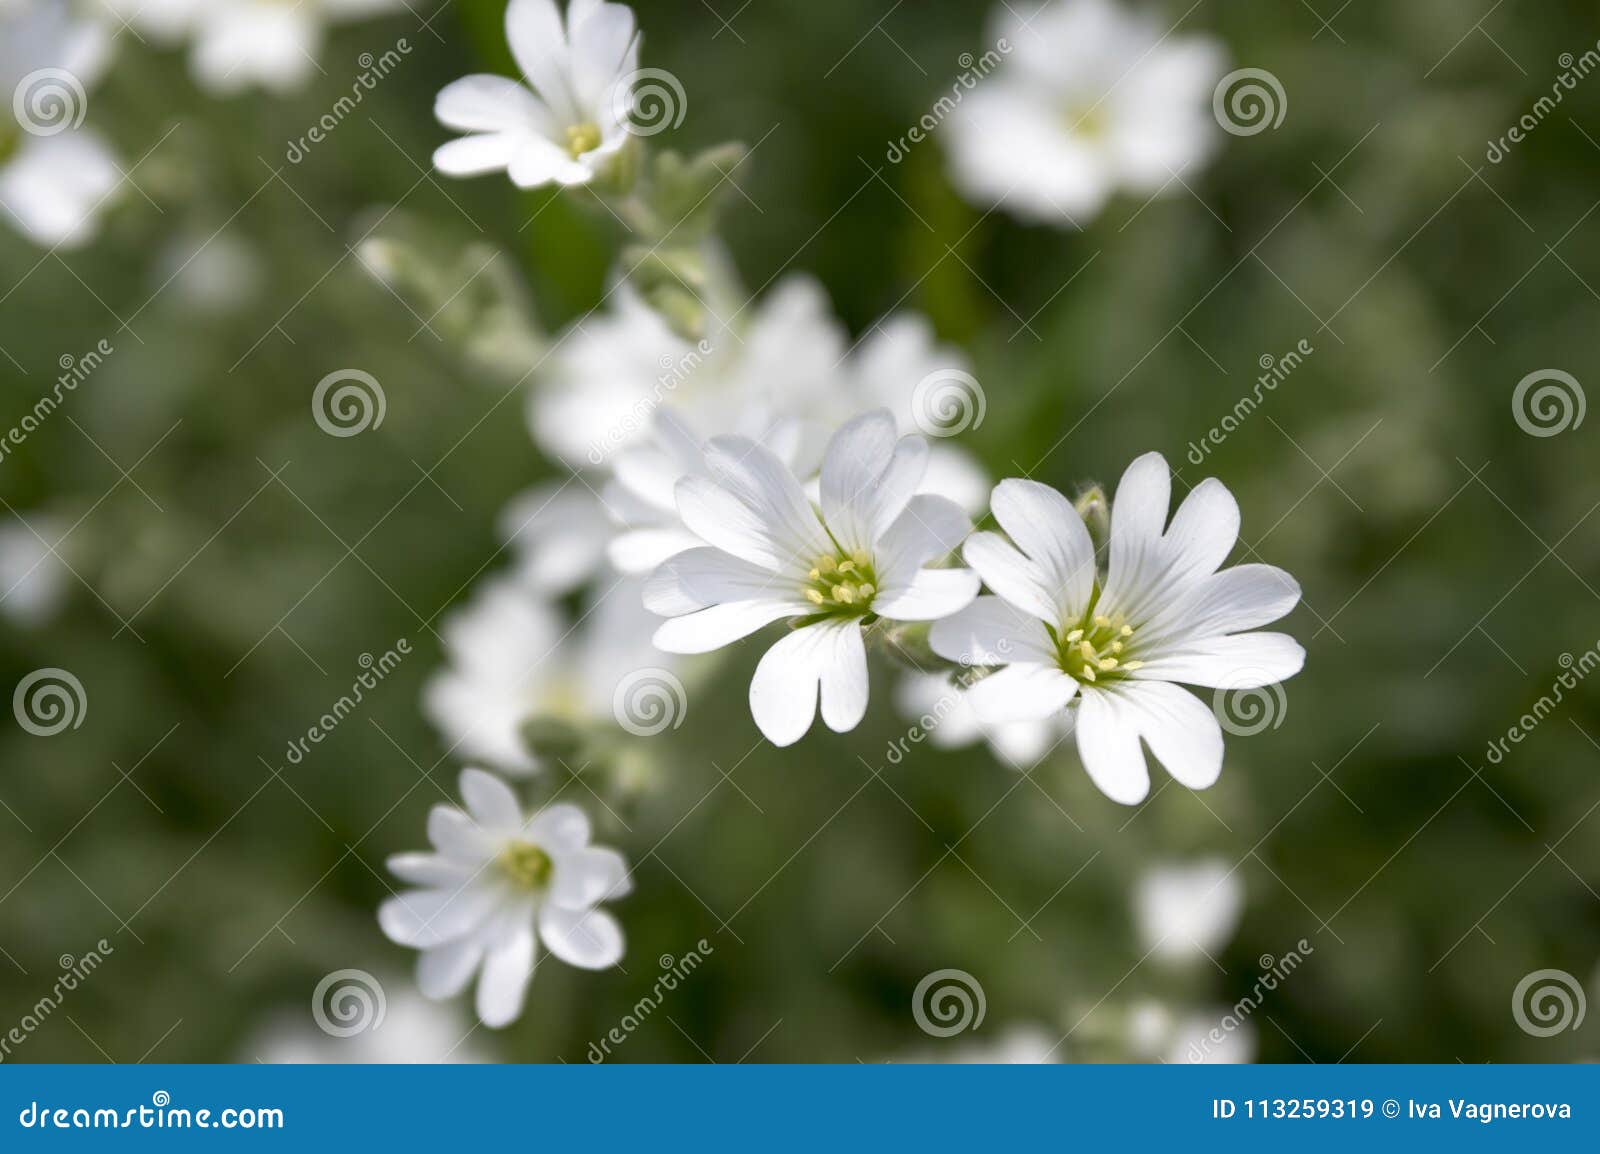 snow-in-summer, cerastium tomentosum in bloom, white flowers background